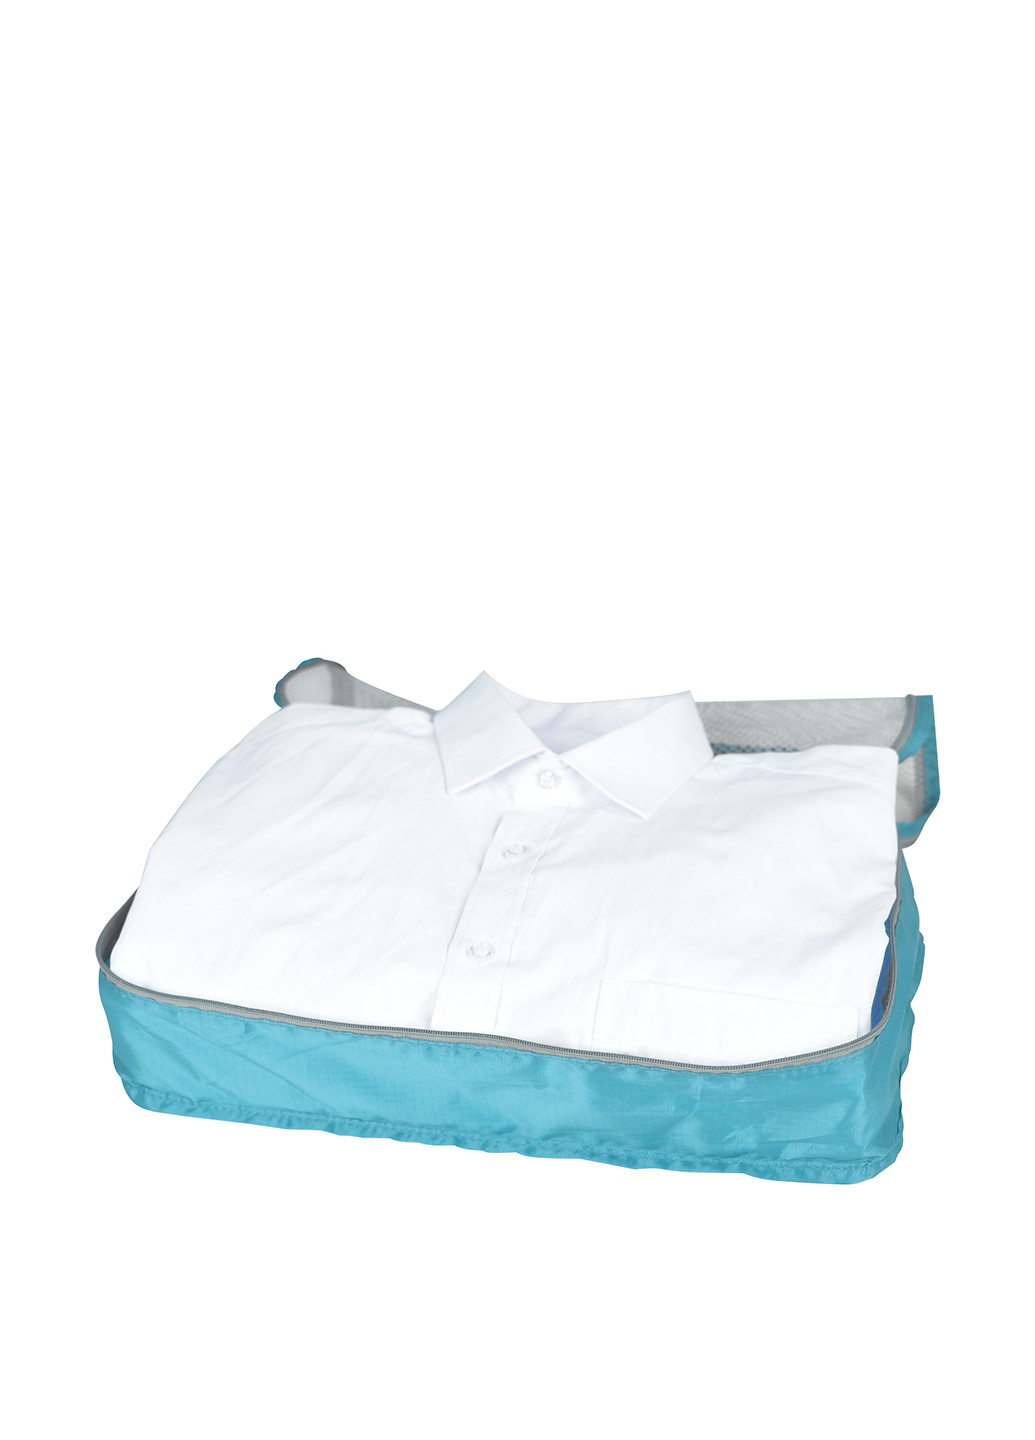 Чехол для хранения одежды, 40x26x10 см Handy-Home однотонное голубое